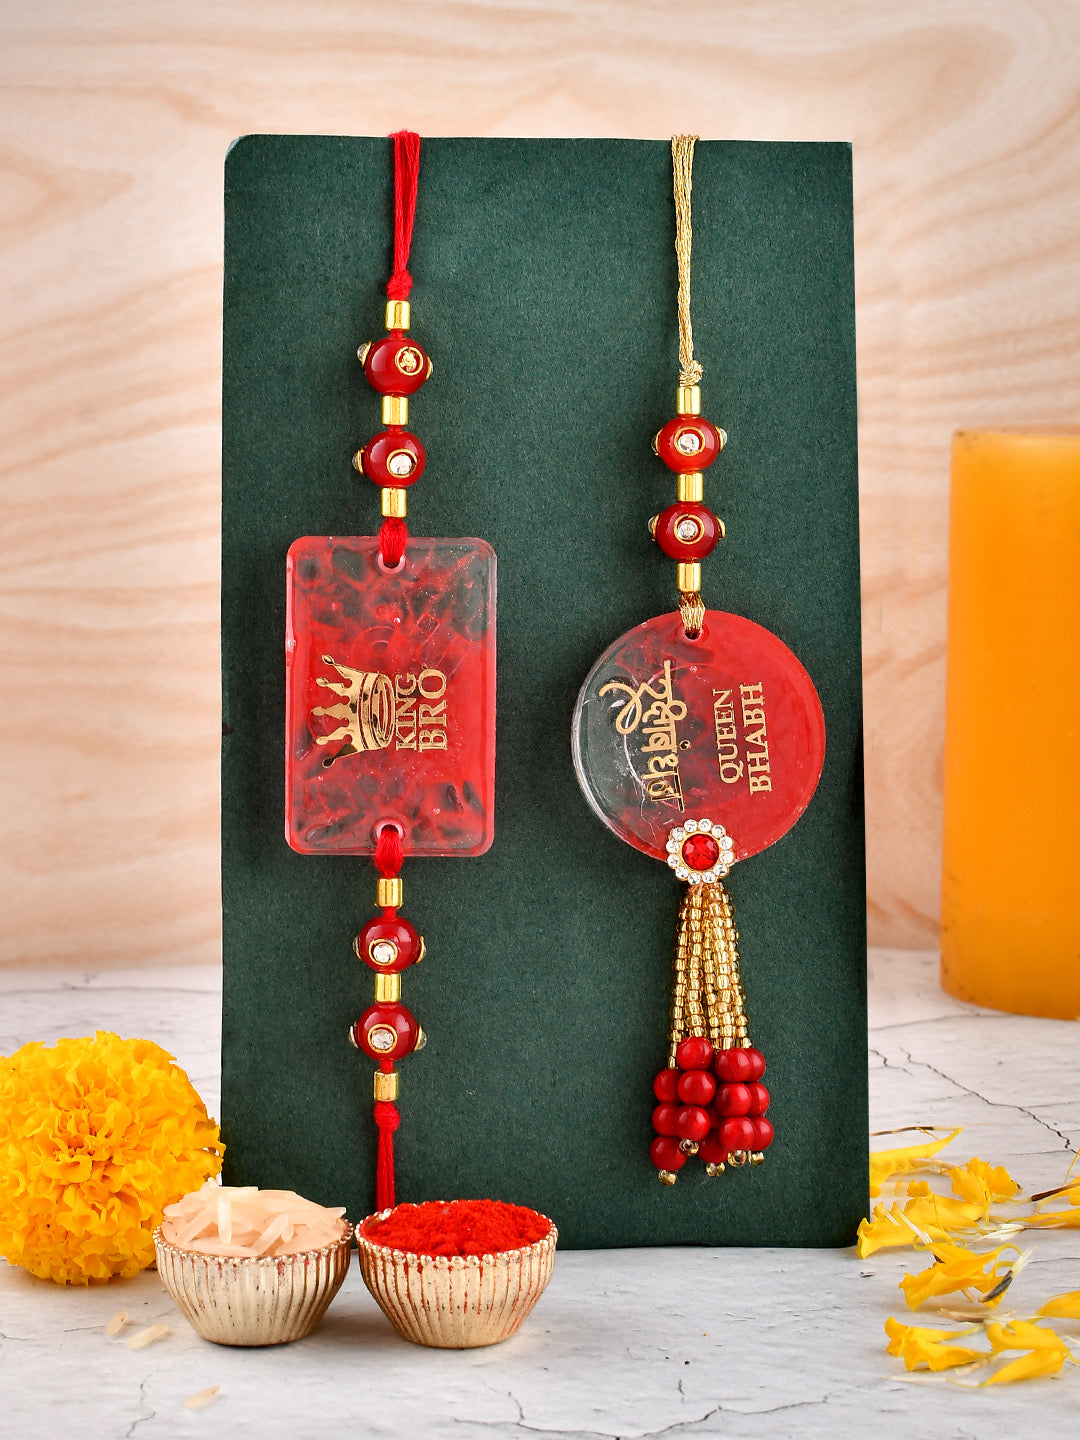 Red & Golden Resin Elegant Bhaiya Bhabhi Rakhi with Extended Pearls. - Only Rakhi (RP23154)